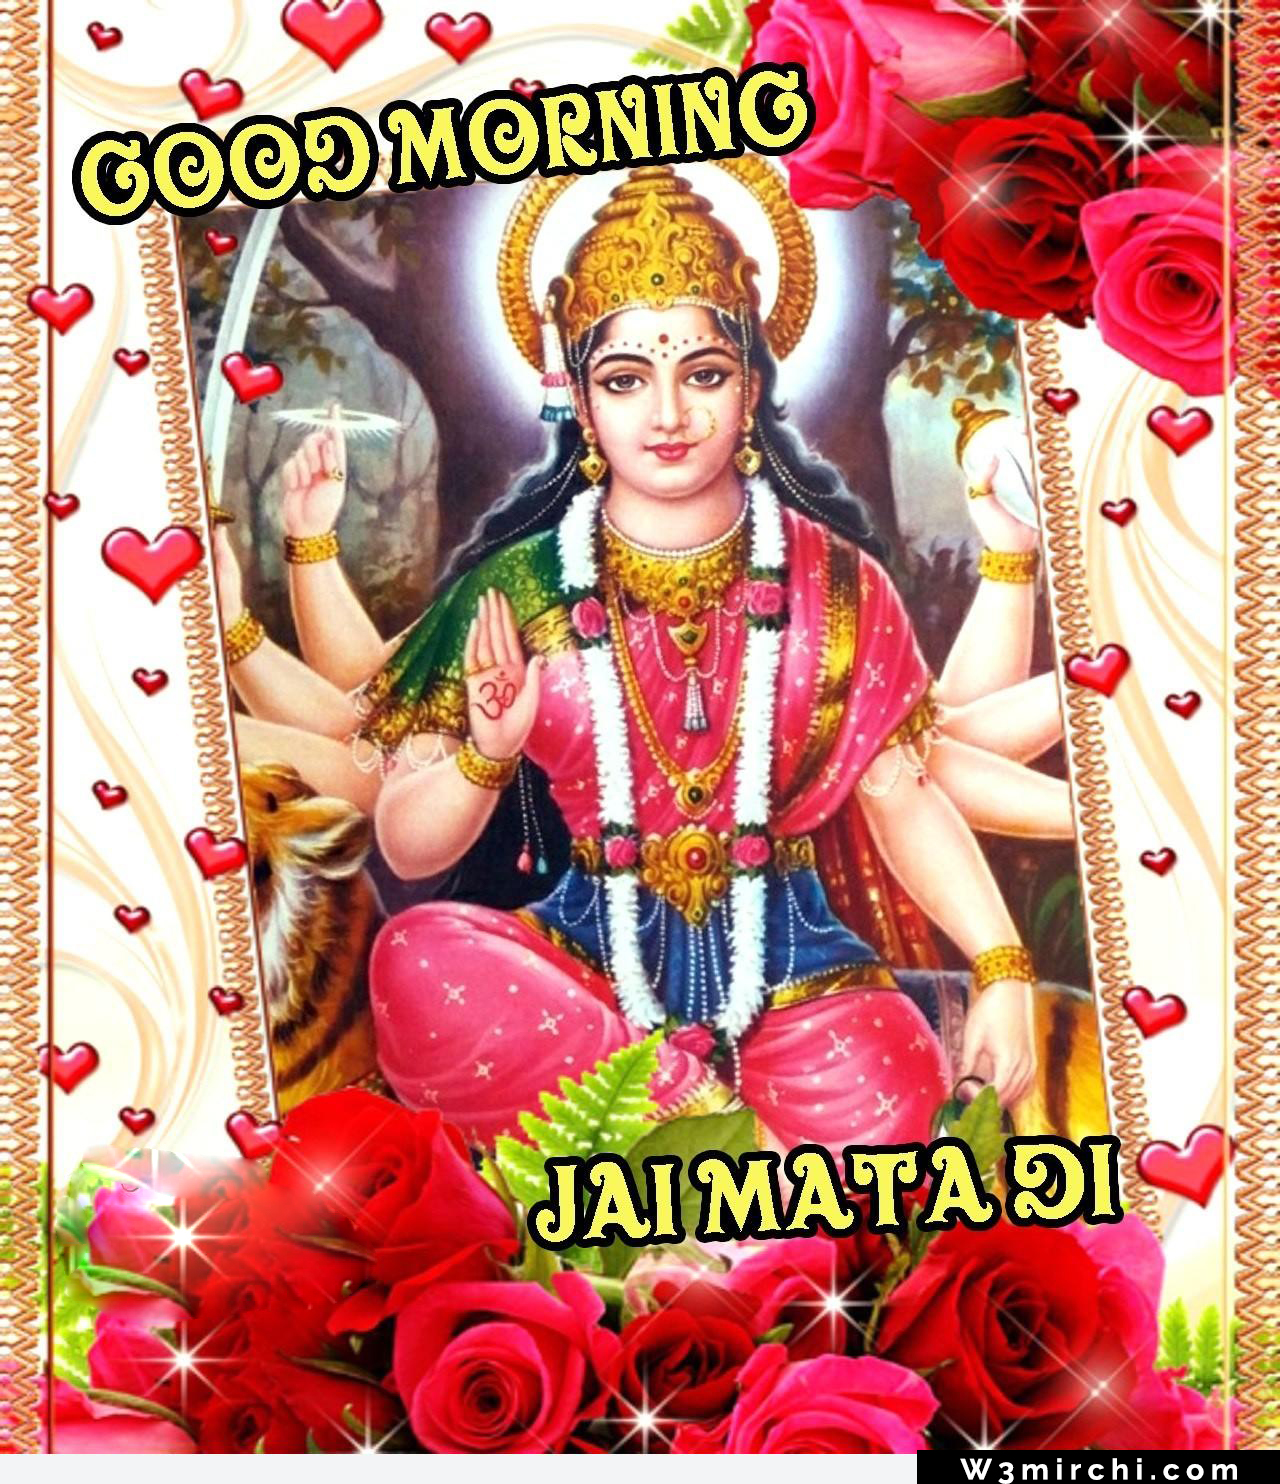 Good Morning Jai Mata Di - Mata Rani Good Morning Images